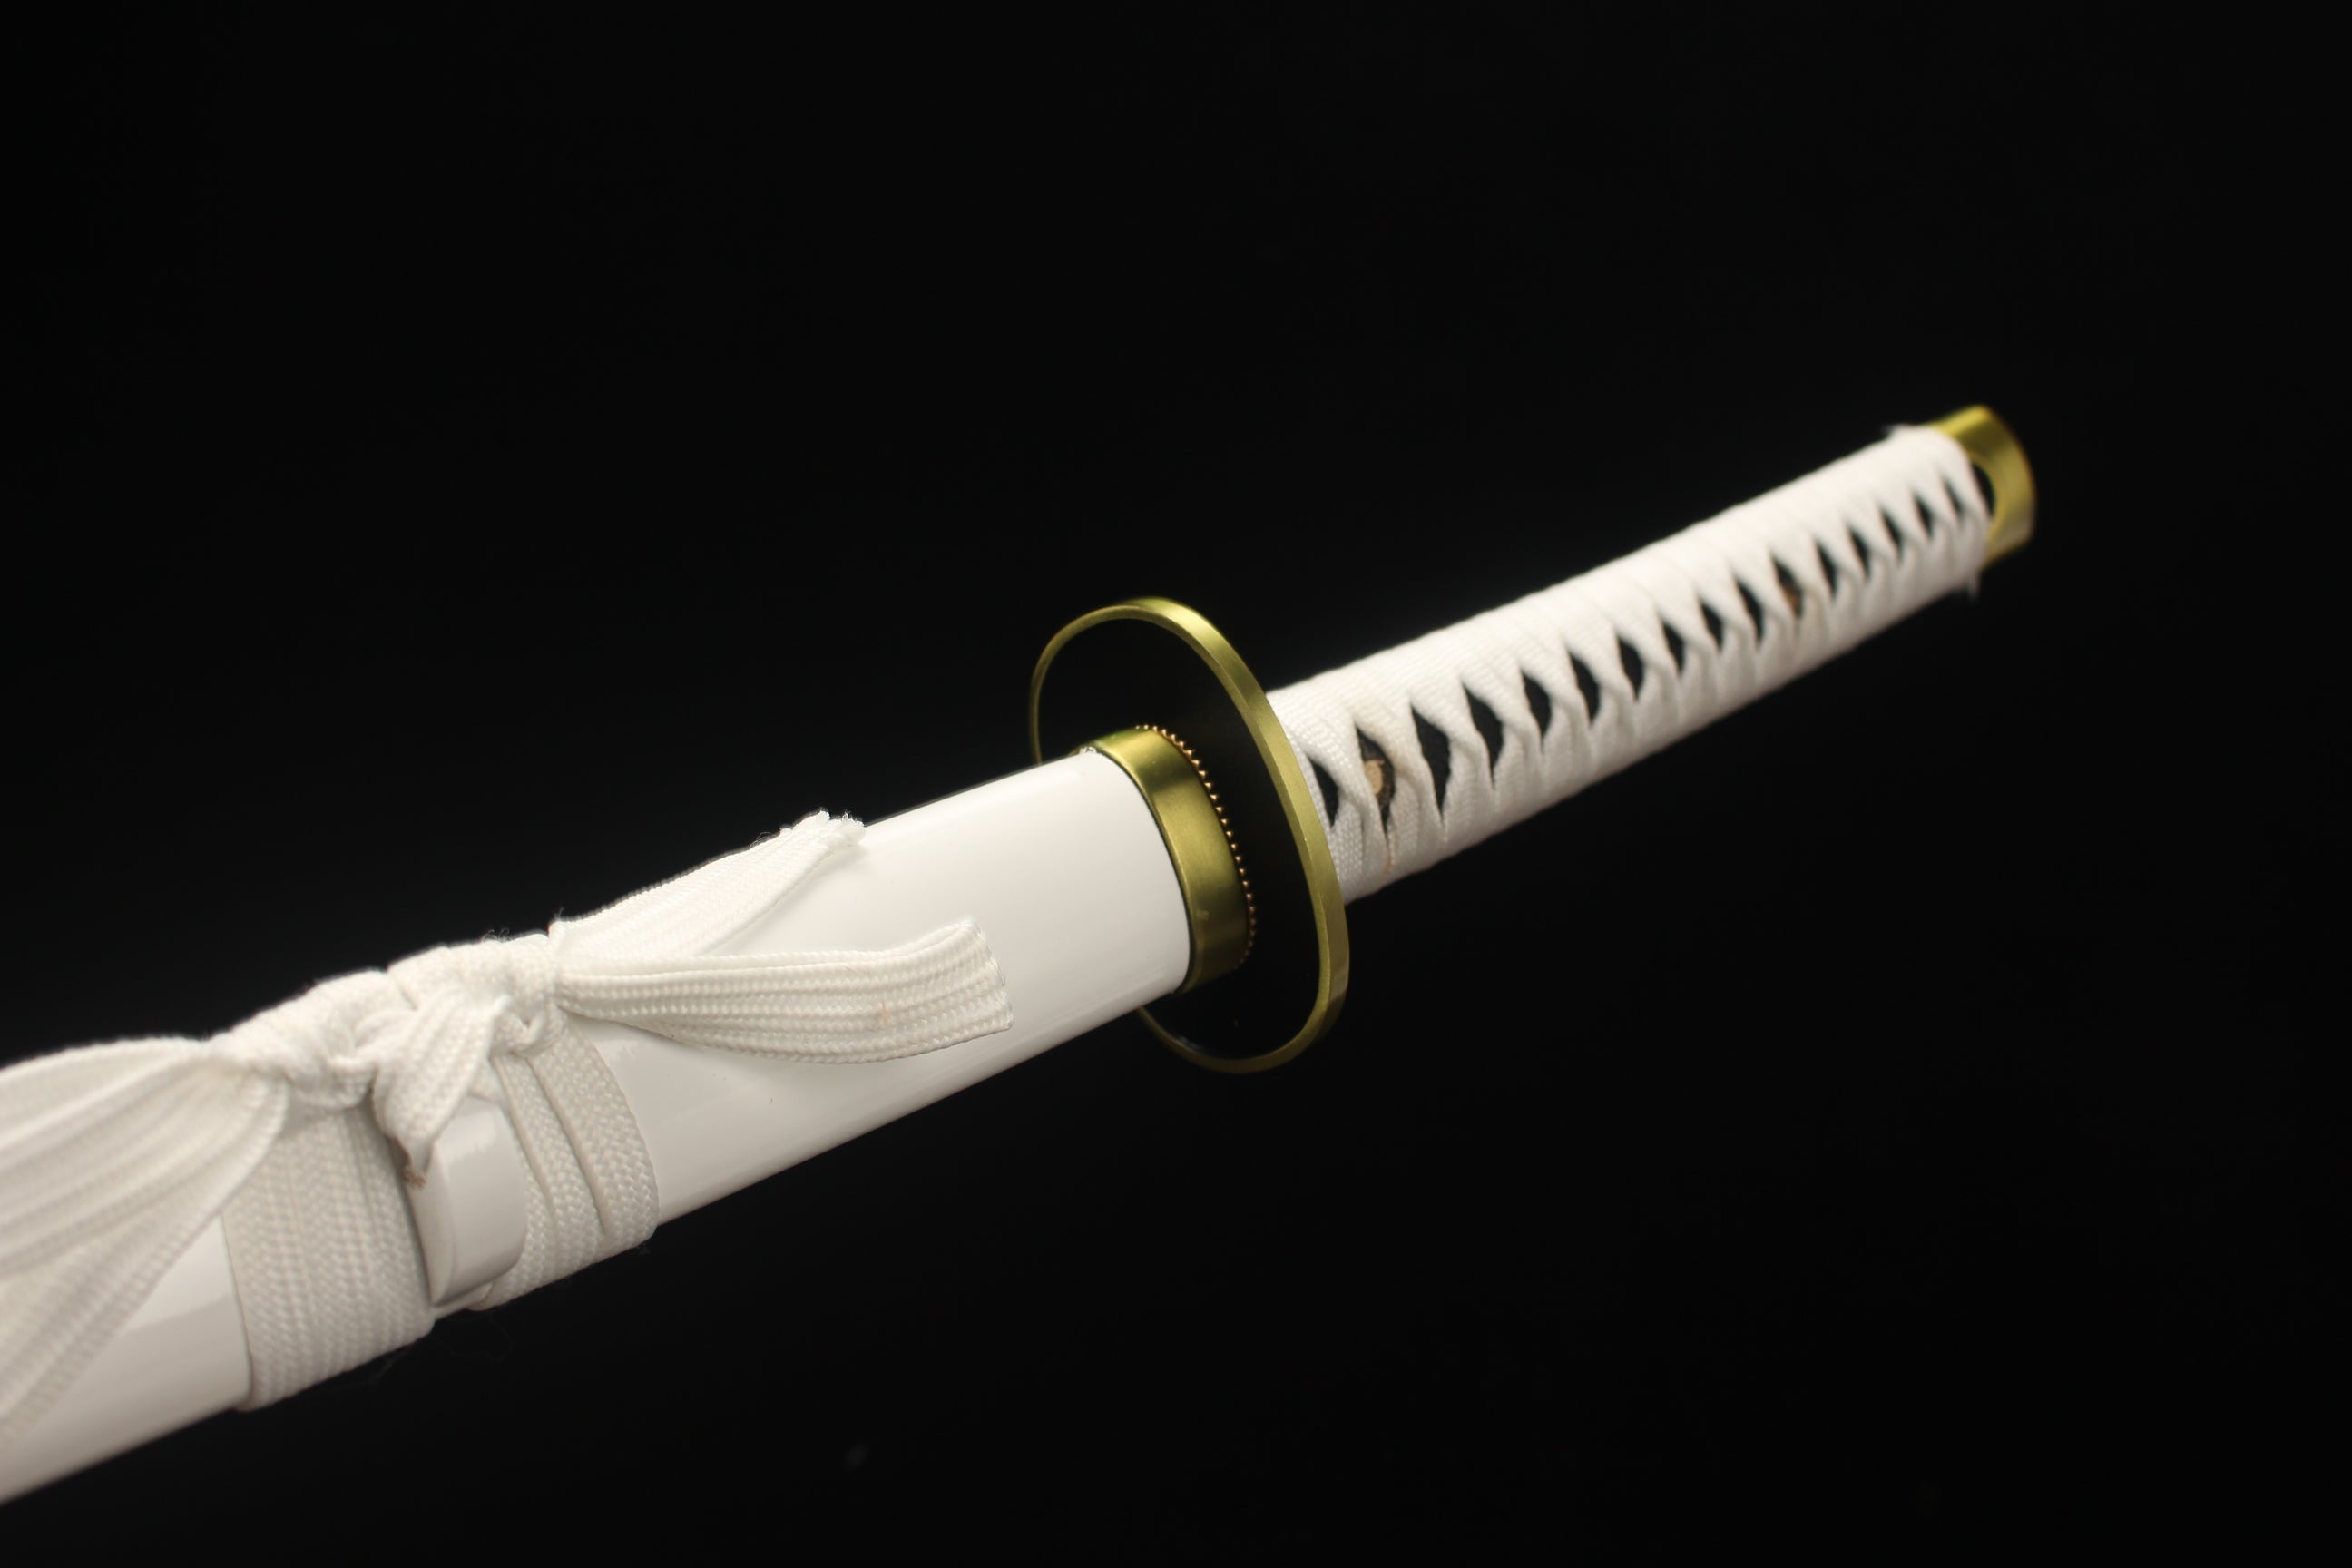 Wado Ichimonji, Einteiler, Anime-Version Katana, japanisches Samurai-Schwert, Kohlenstoffstahl, Longquan-Schwert